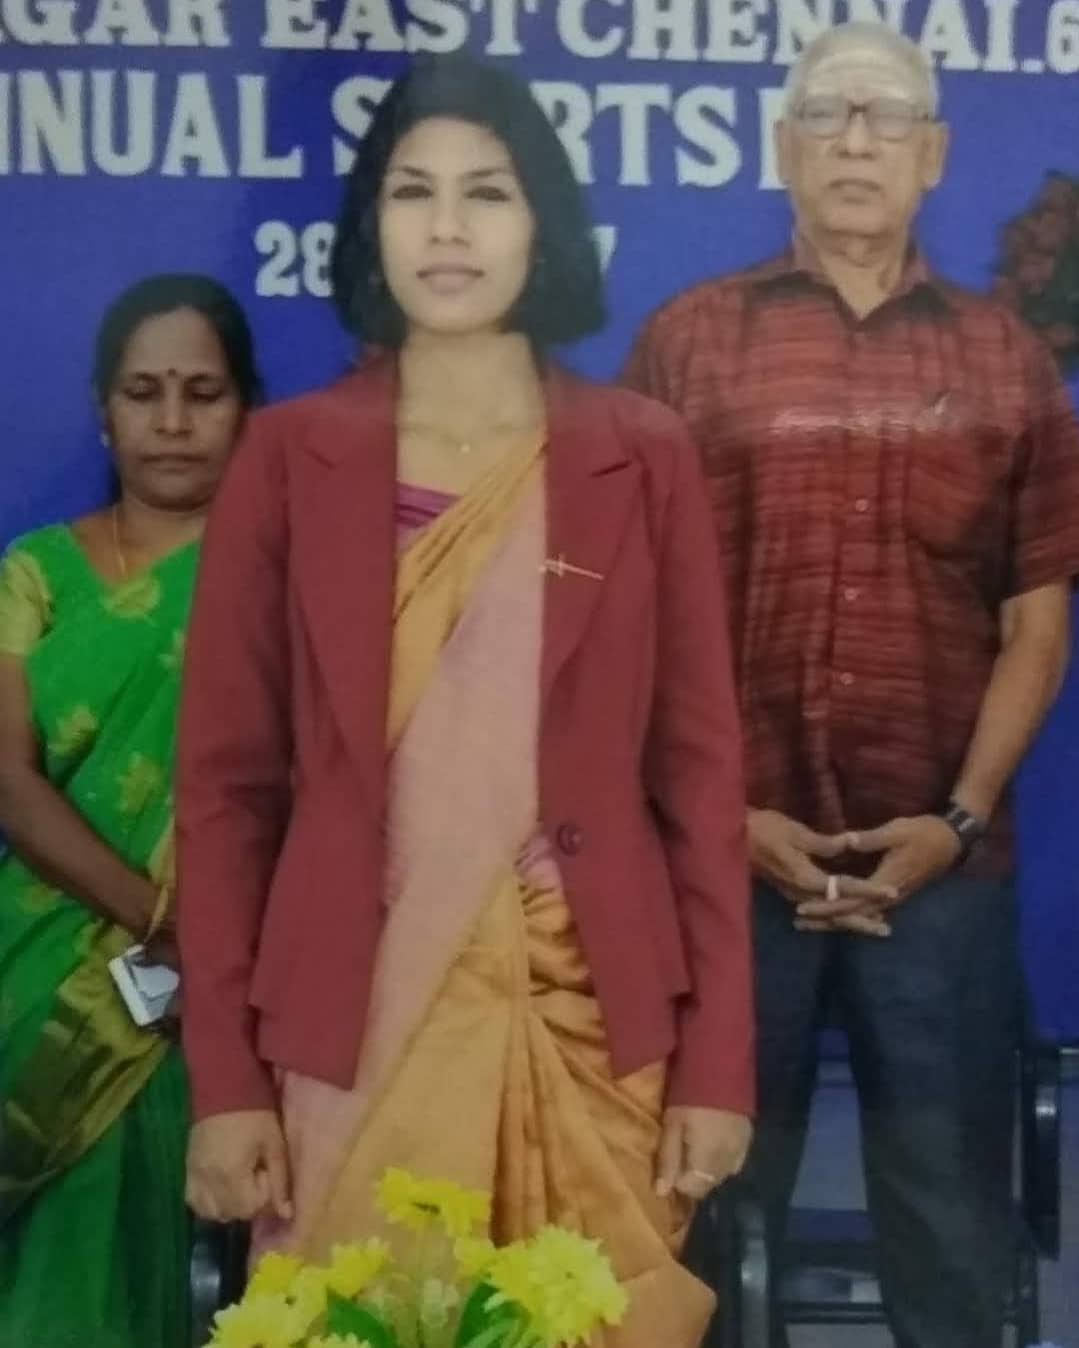 वल्लिअम्मल कॉलेज में अपने माता-पिता के साथ गेस्ट स्पीकर के रूप में पोज देते हुए भवानी देवी